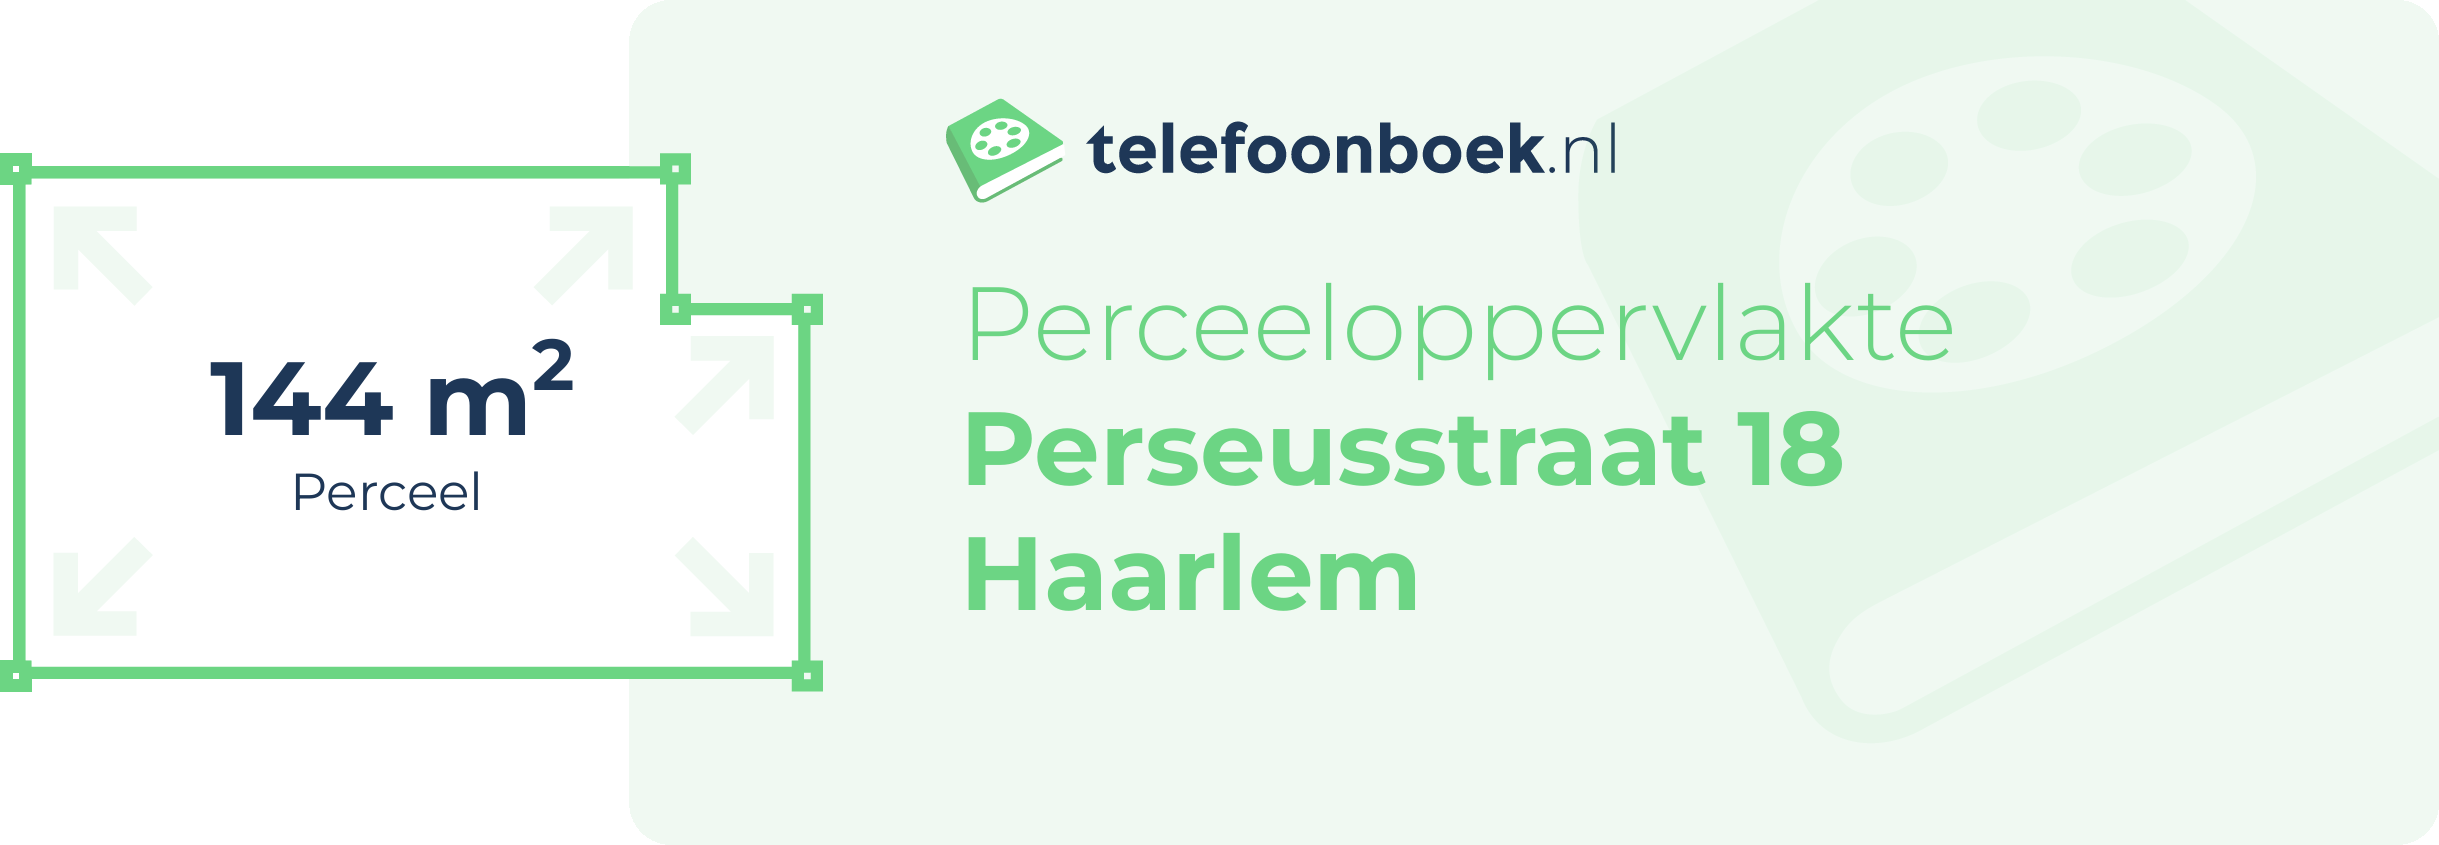 Perceeloppervlakte Perseusstraat 18 Haarlem